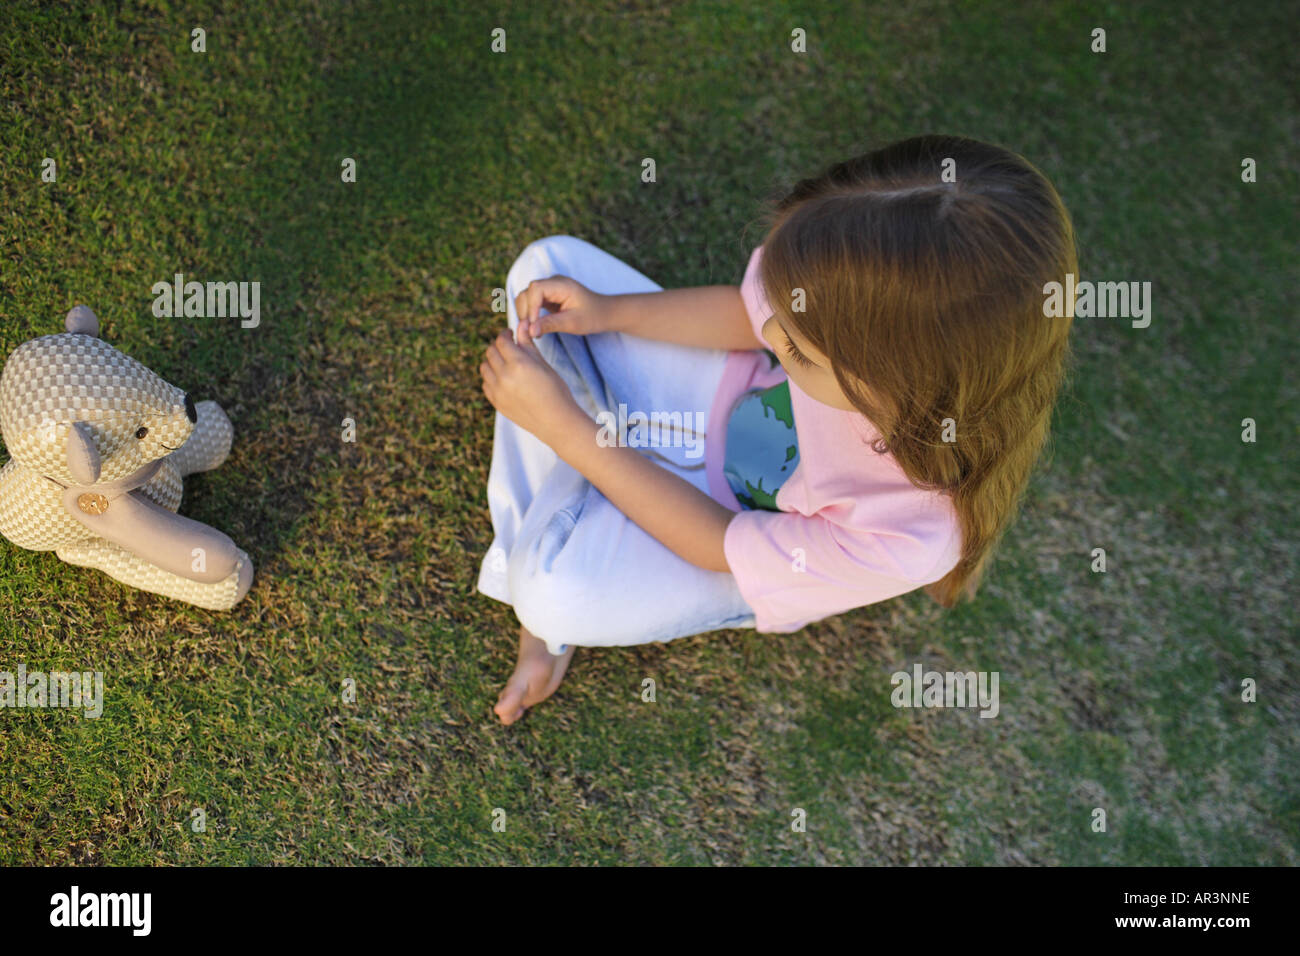 Junges Mädchen sitzen auf dem Rasen gegenüber Spielzeug Bär Stockfoto